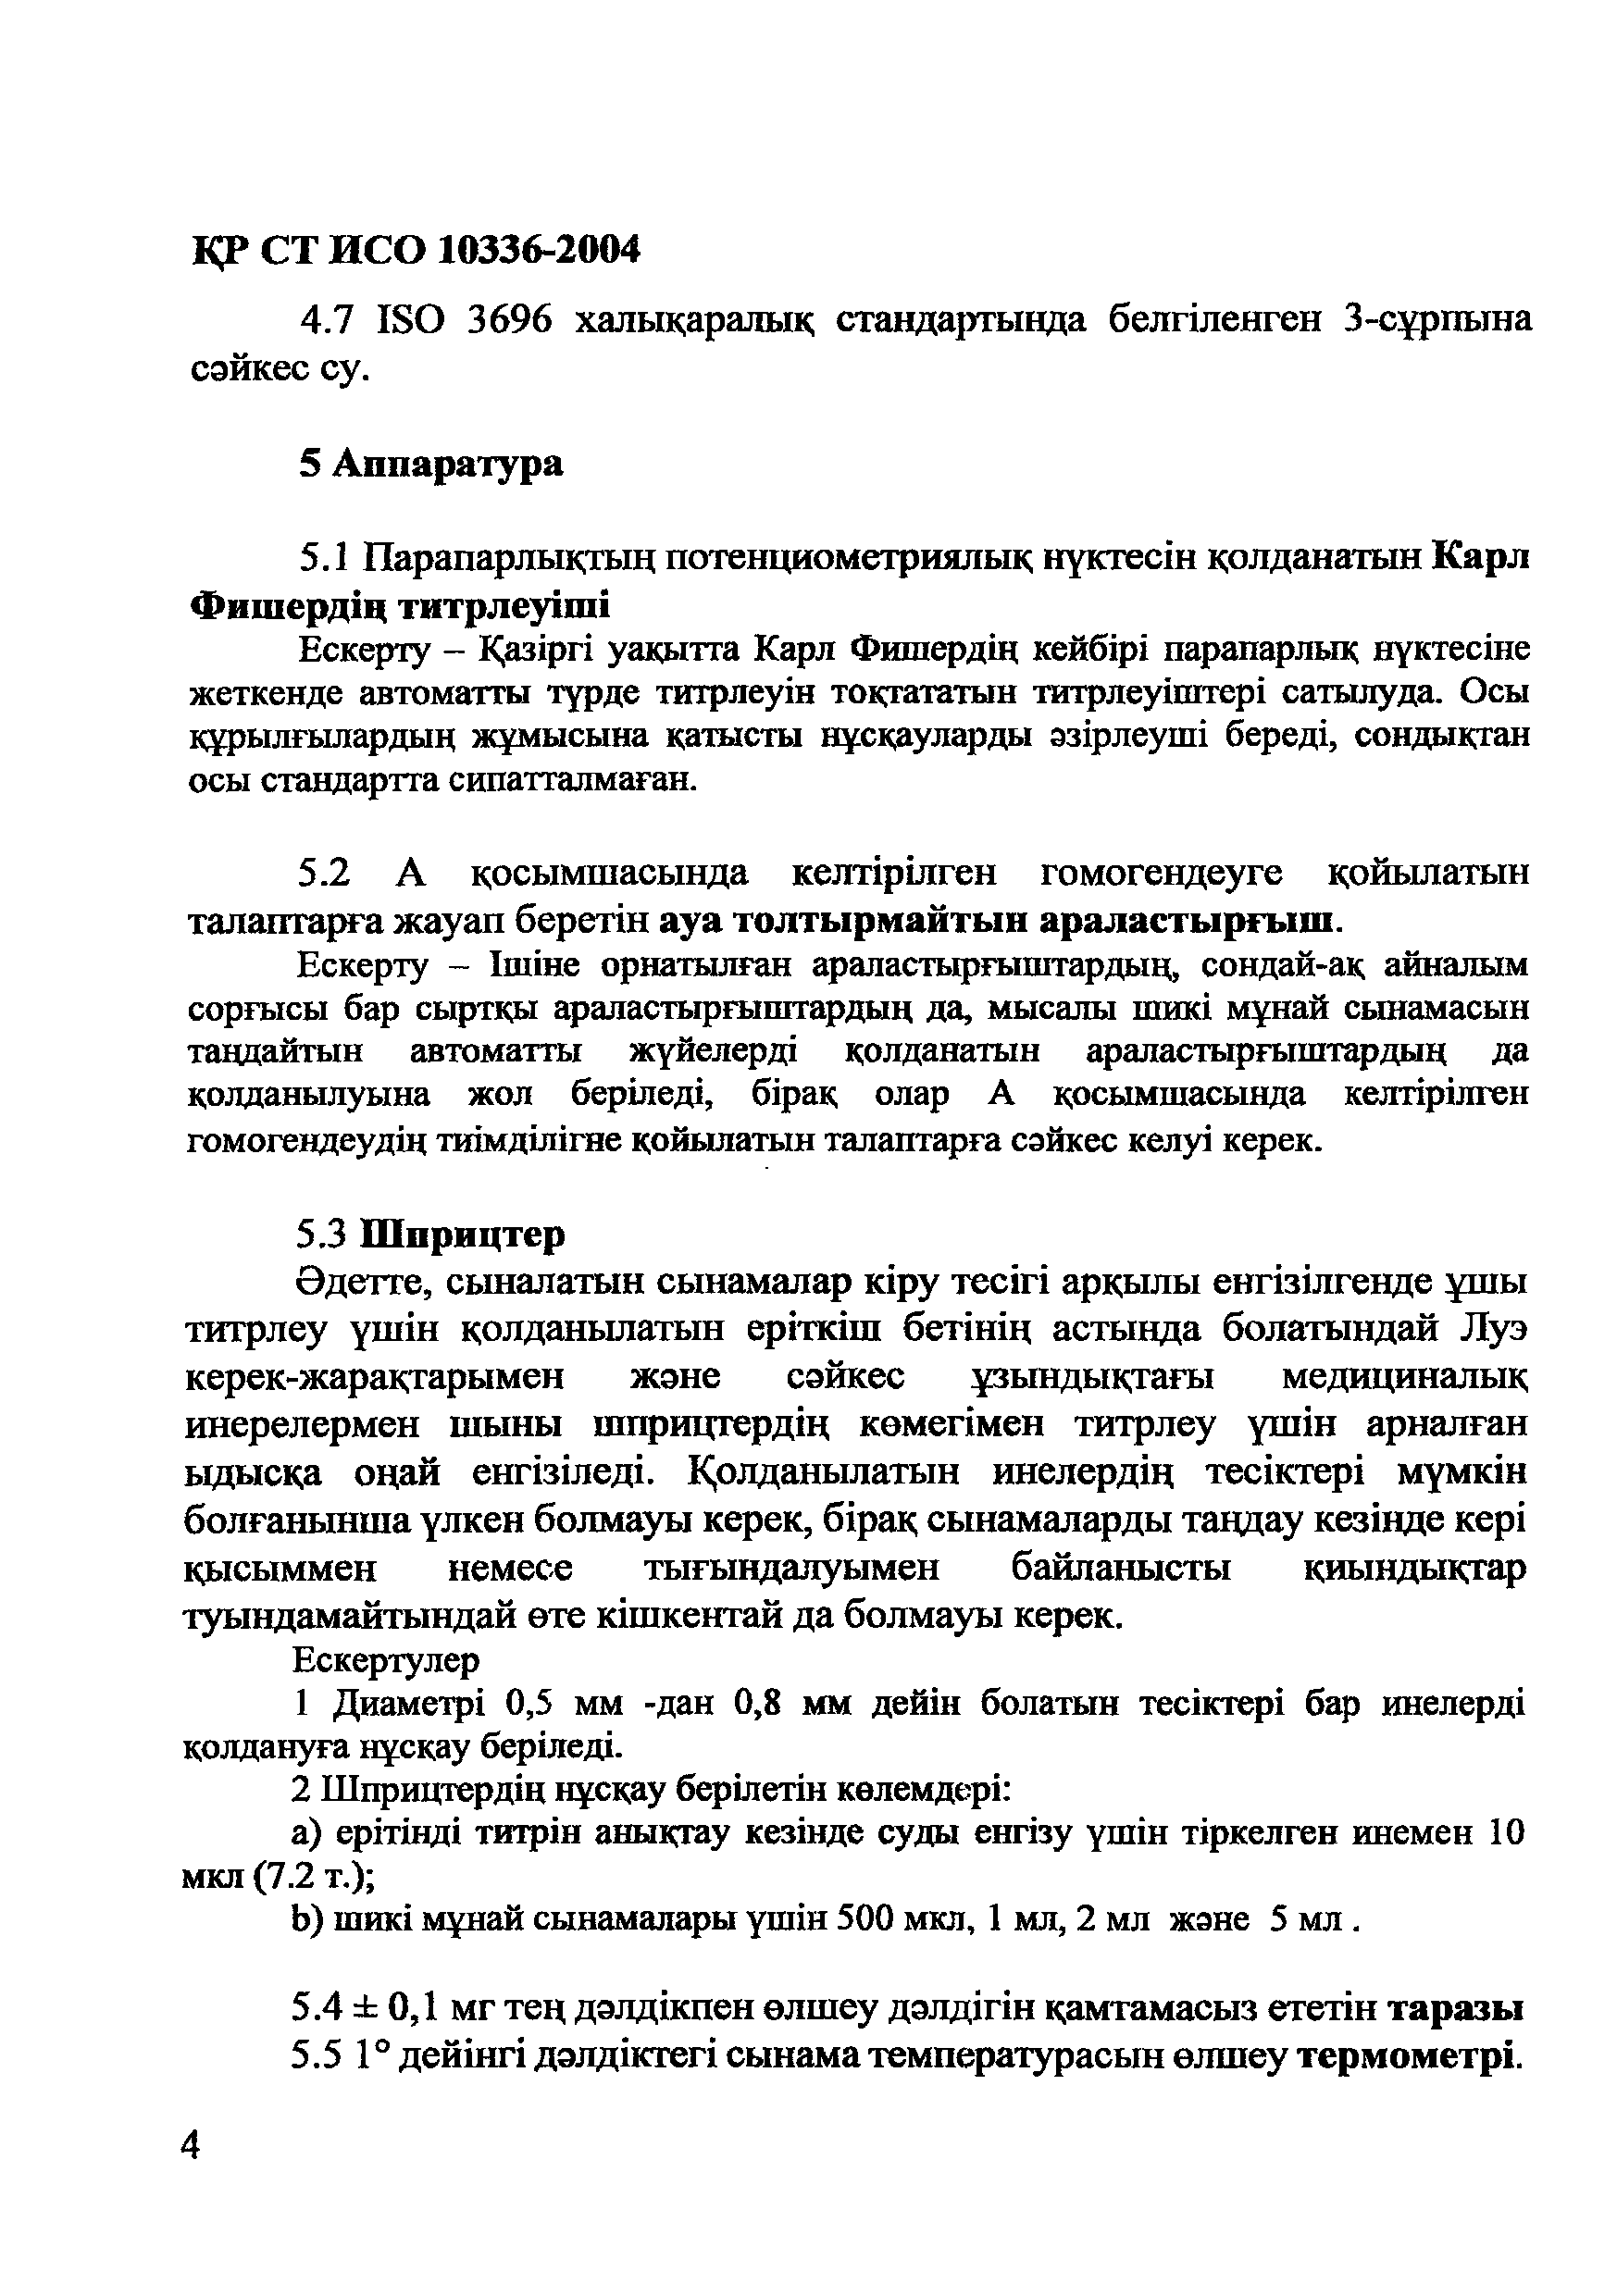 СТ РК ИСО 10336-2004